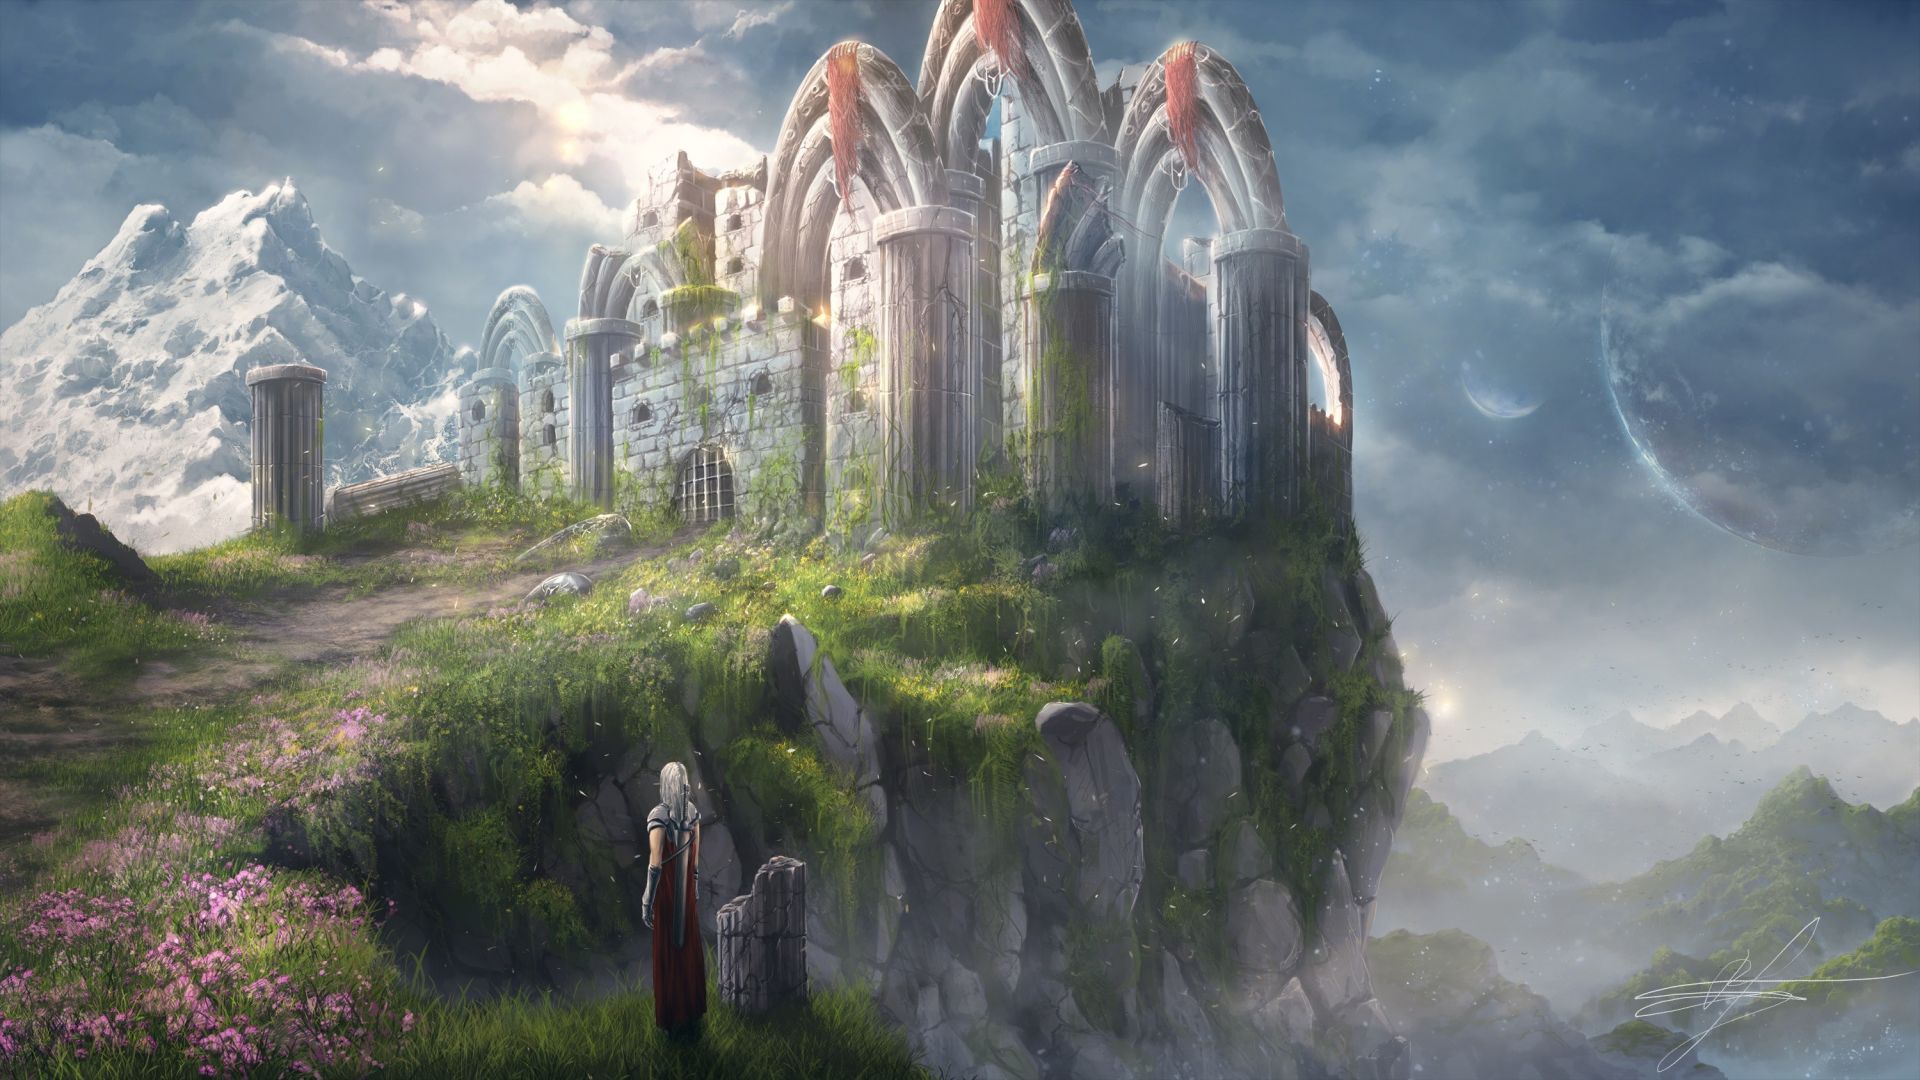 Fantasy Castle Images  Free Download on Freepik